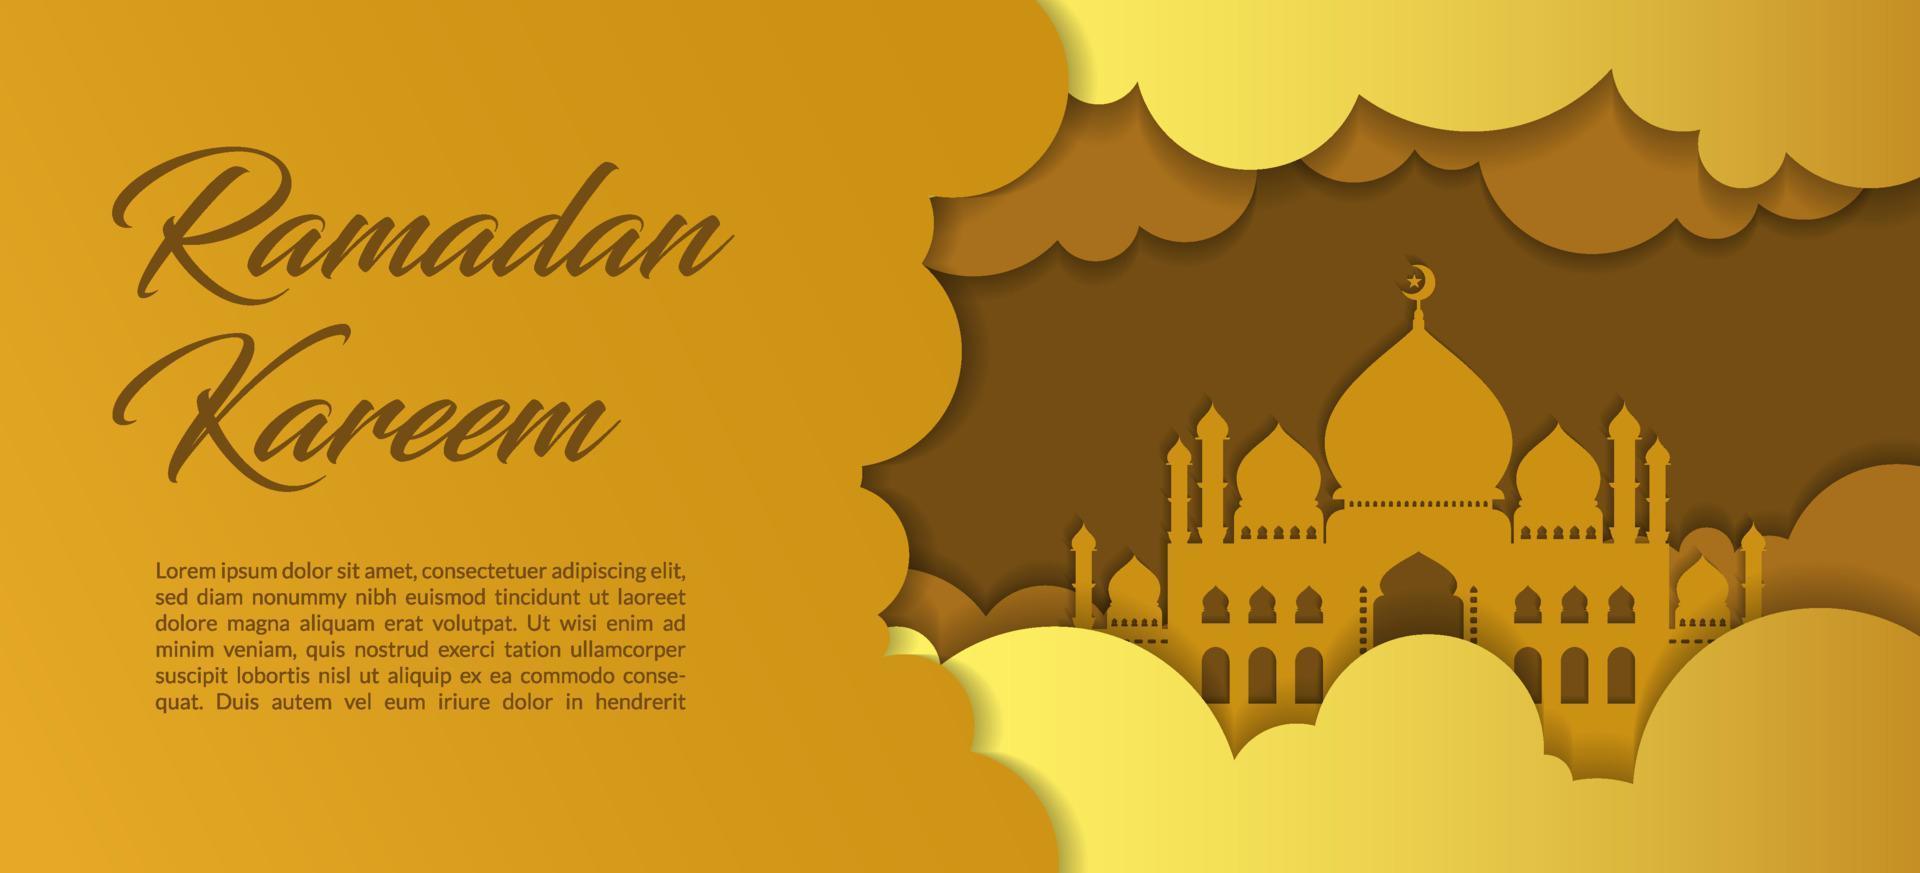 fondo de saludo ramadán kareem. tarjetas de felicitación de ramadán en un estilo de corte de papel con nubes y mezquita. tarjeta de felicitación islámica dorada. vector